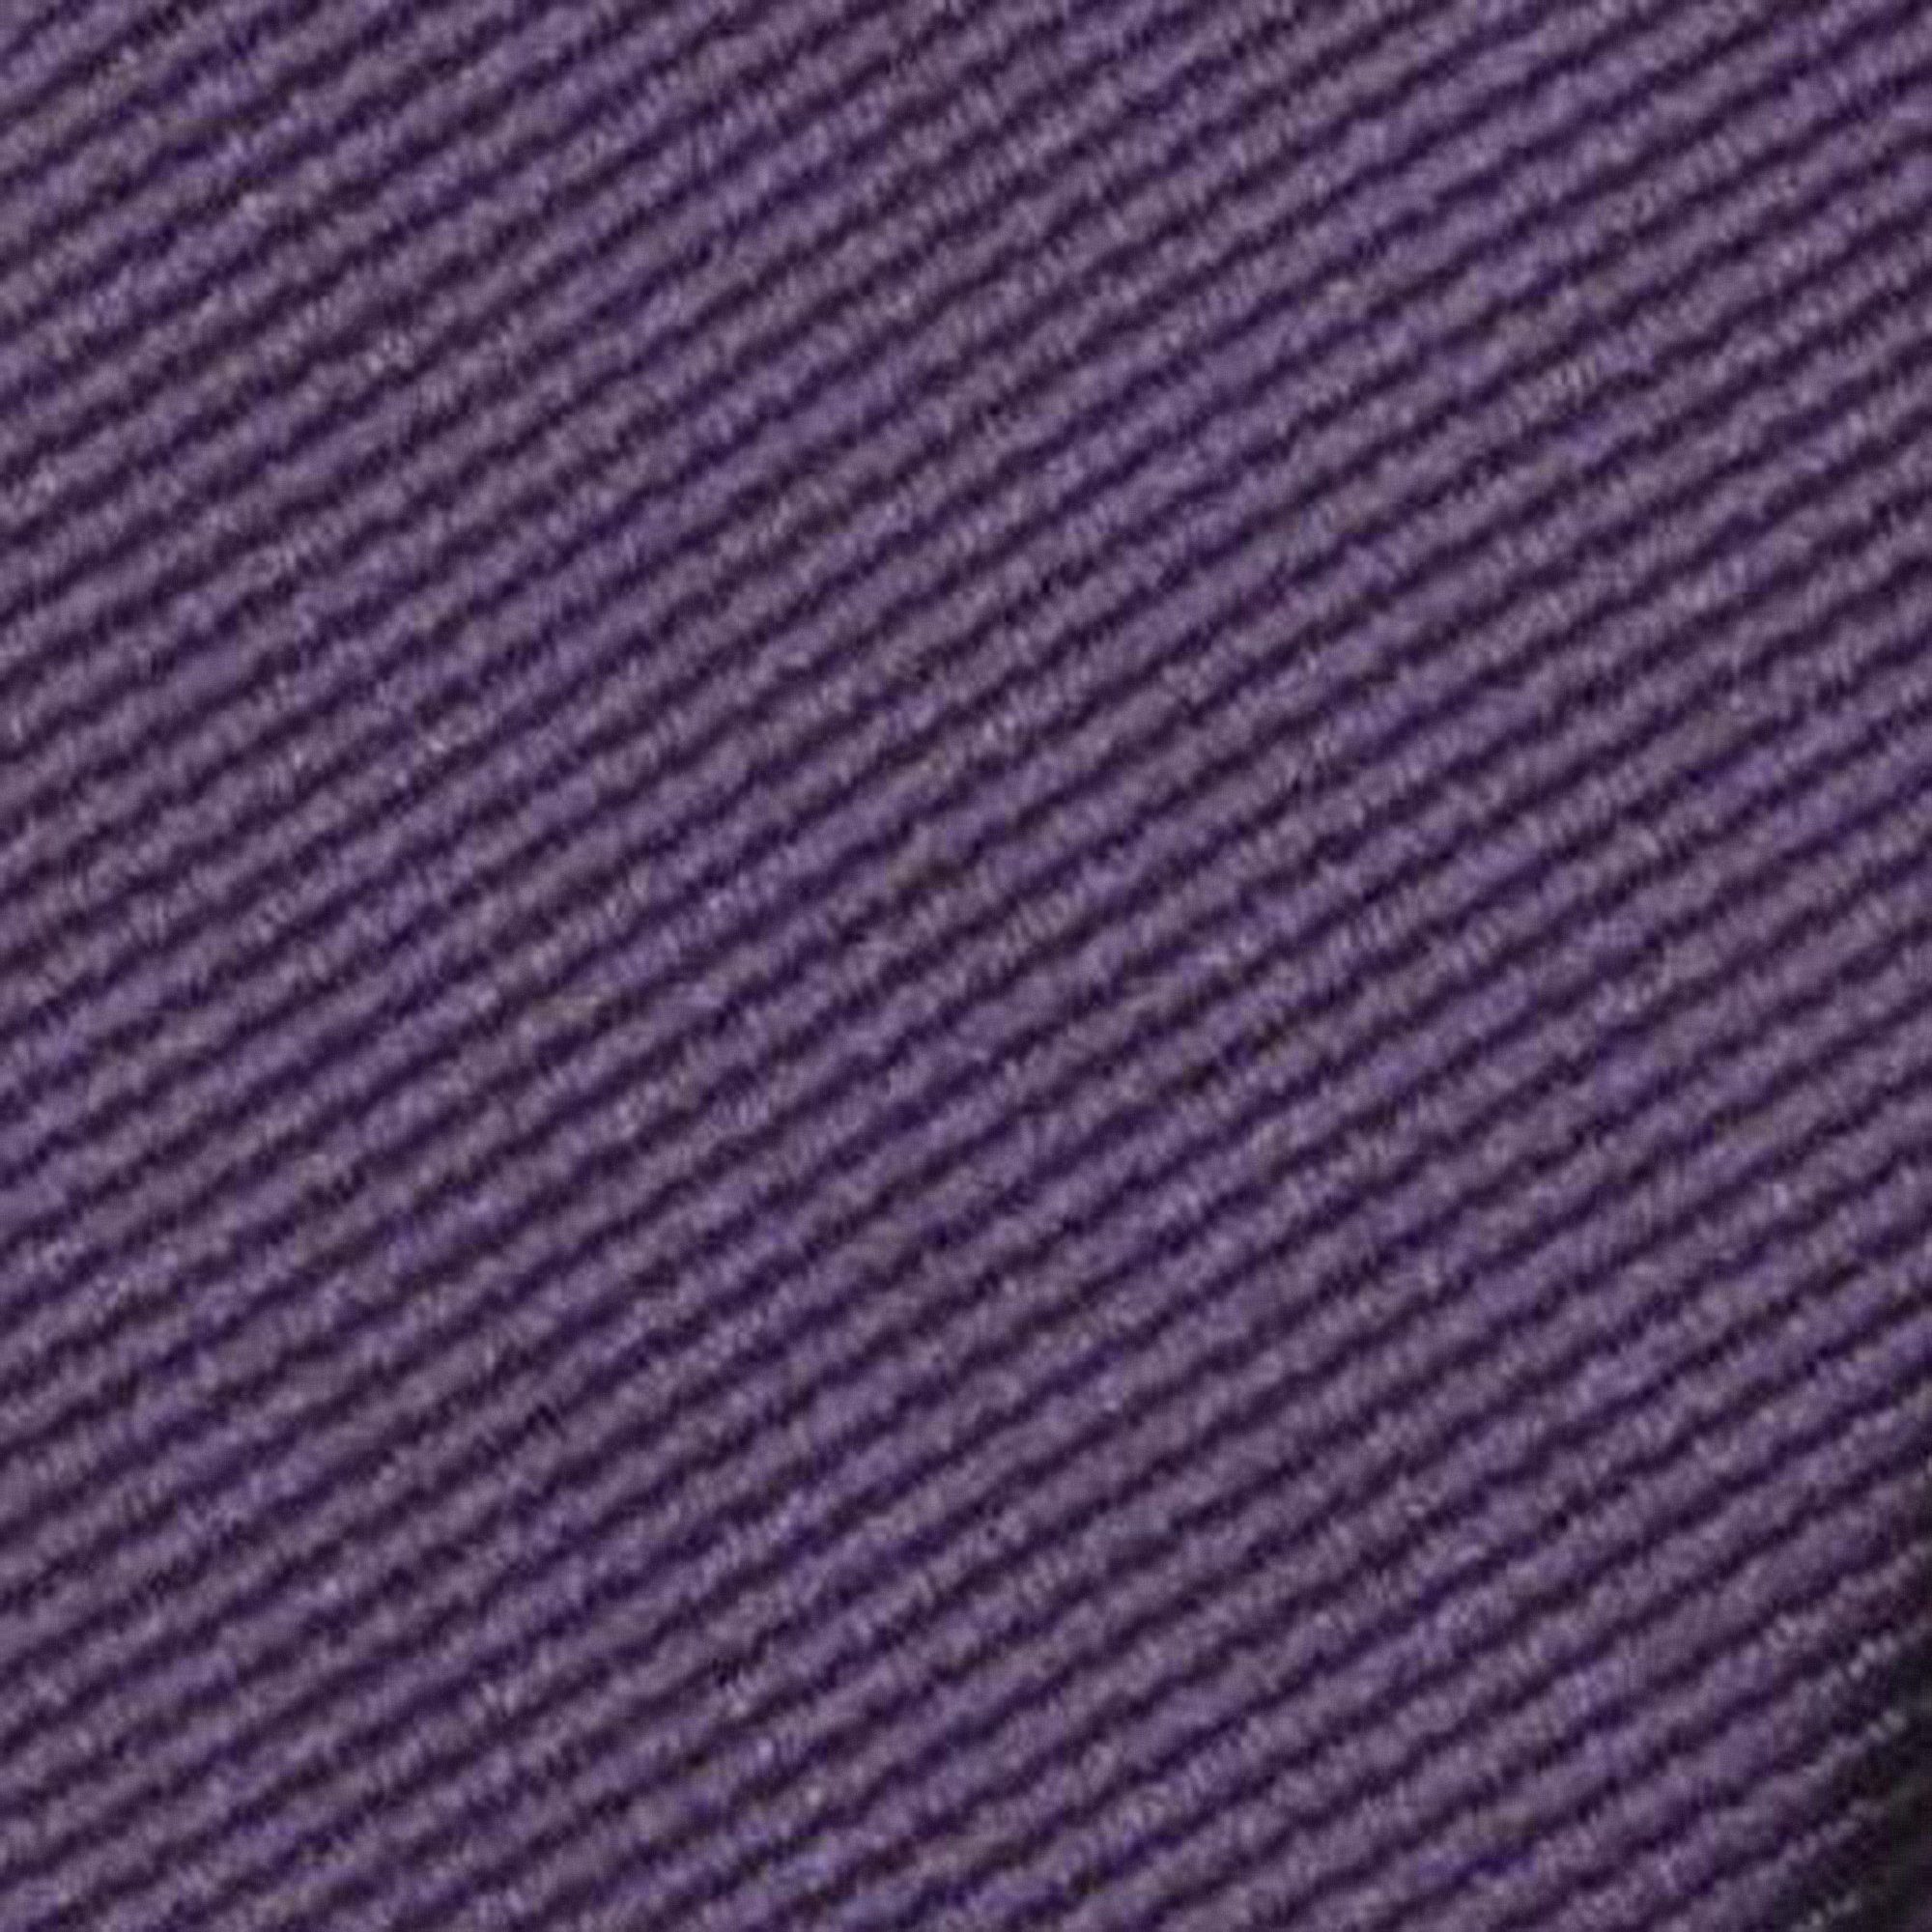 GASSANI Krawatte Schmale Männer Slim-Fit Rips Seide-Touch Blech-Spardose, Geschenk-Box Purpurviolett Aubergine In Geschenkverpackung) Herren-Krawatte Purple (set, Gestreifte Uni Business-Krawatte, Rippen Blau-Violett mit Männer-Schlips 2-St., Streifen, Mauve Lila Dose Feine